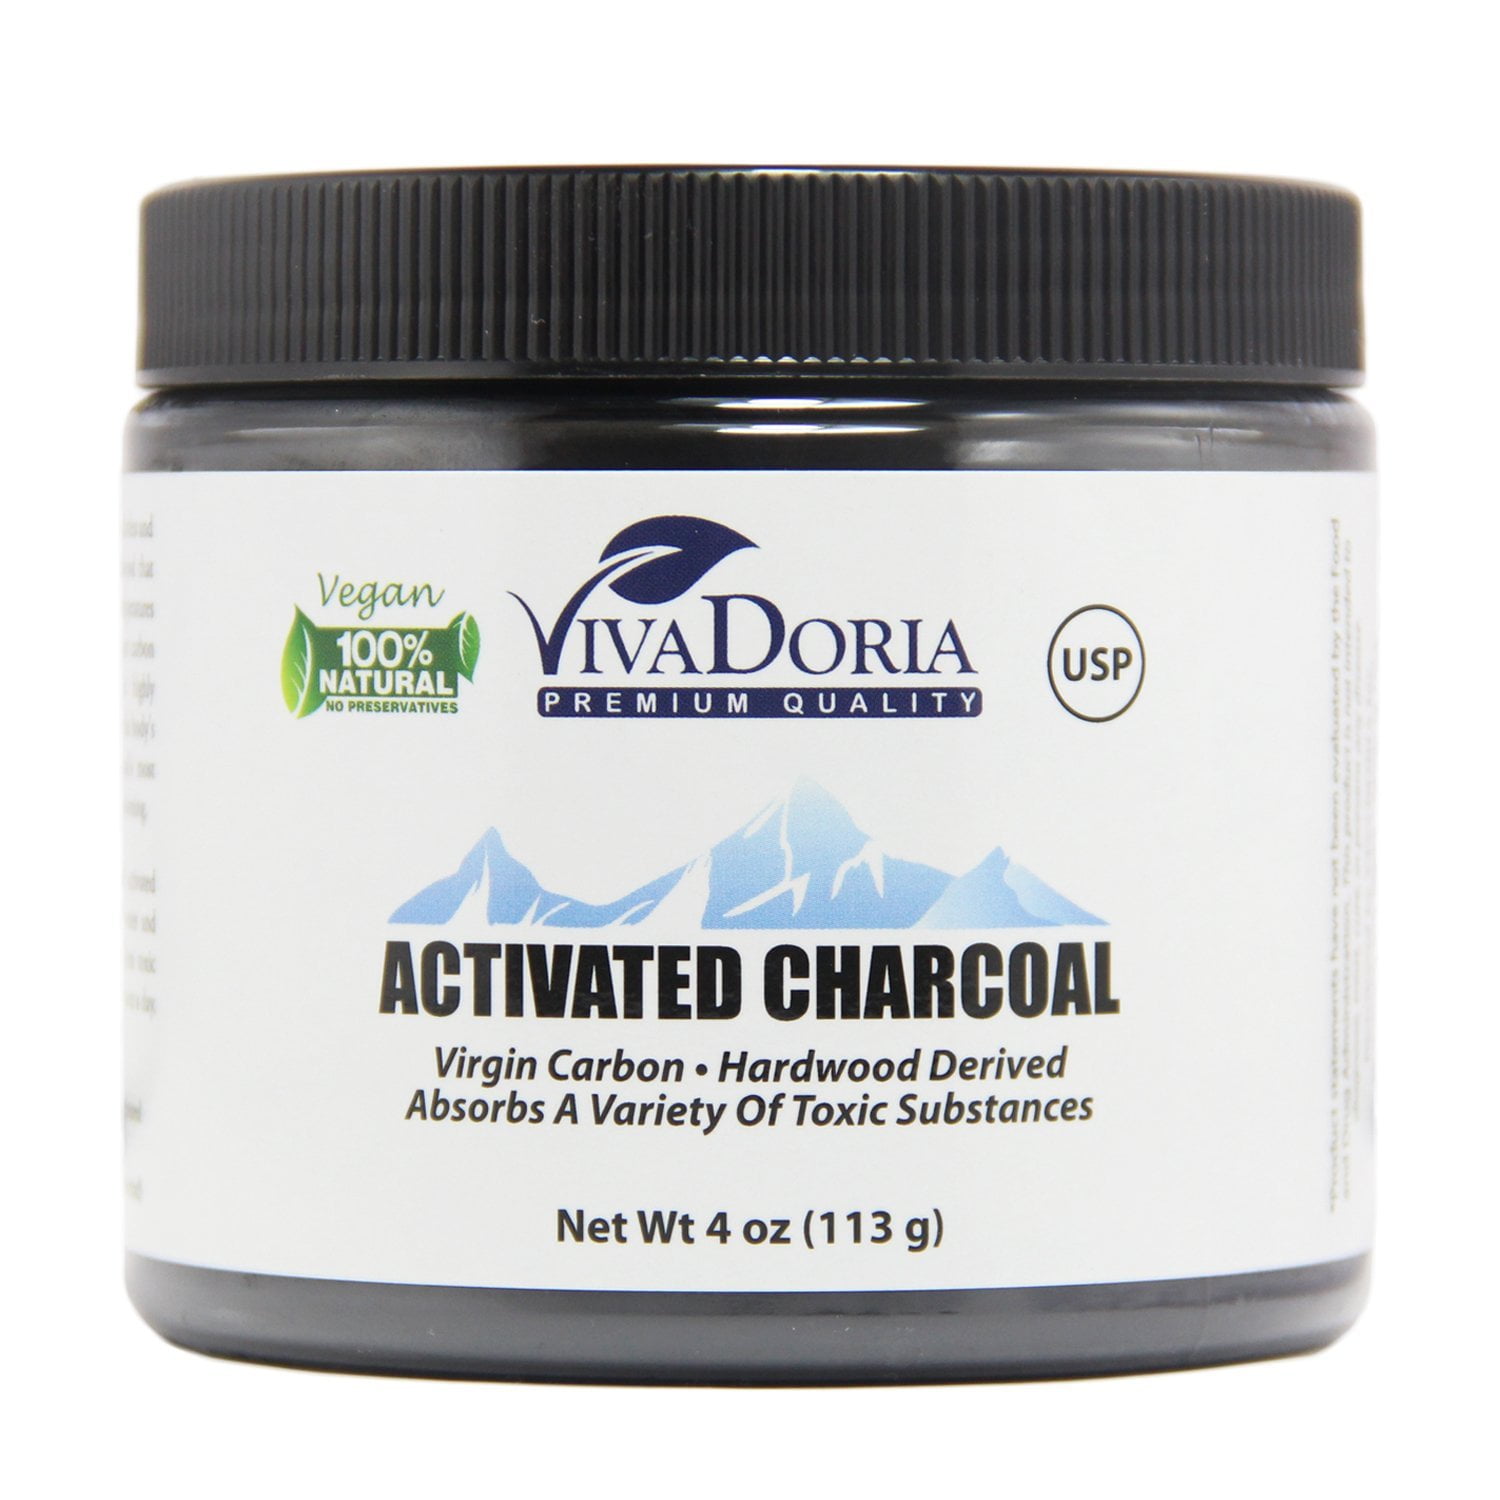 Viva Doria Virgin Activated Charcoal Powder - Food Grade (1.2 oz Glass jar)